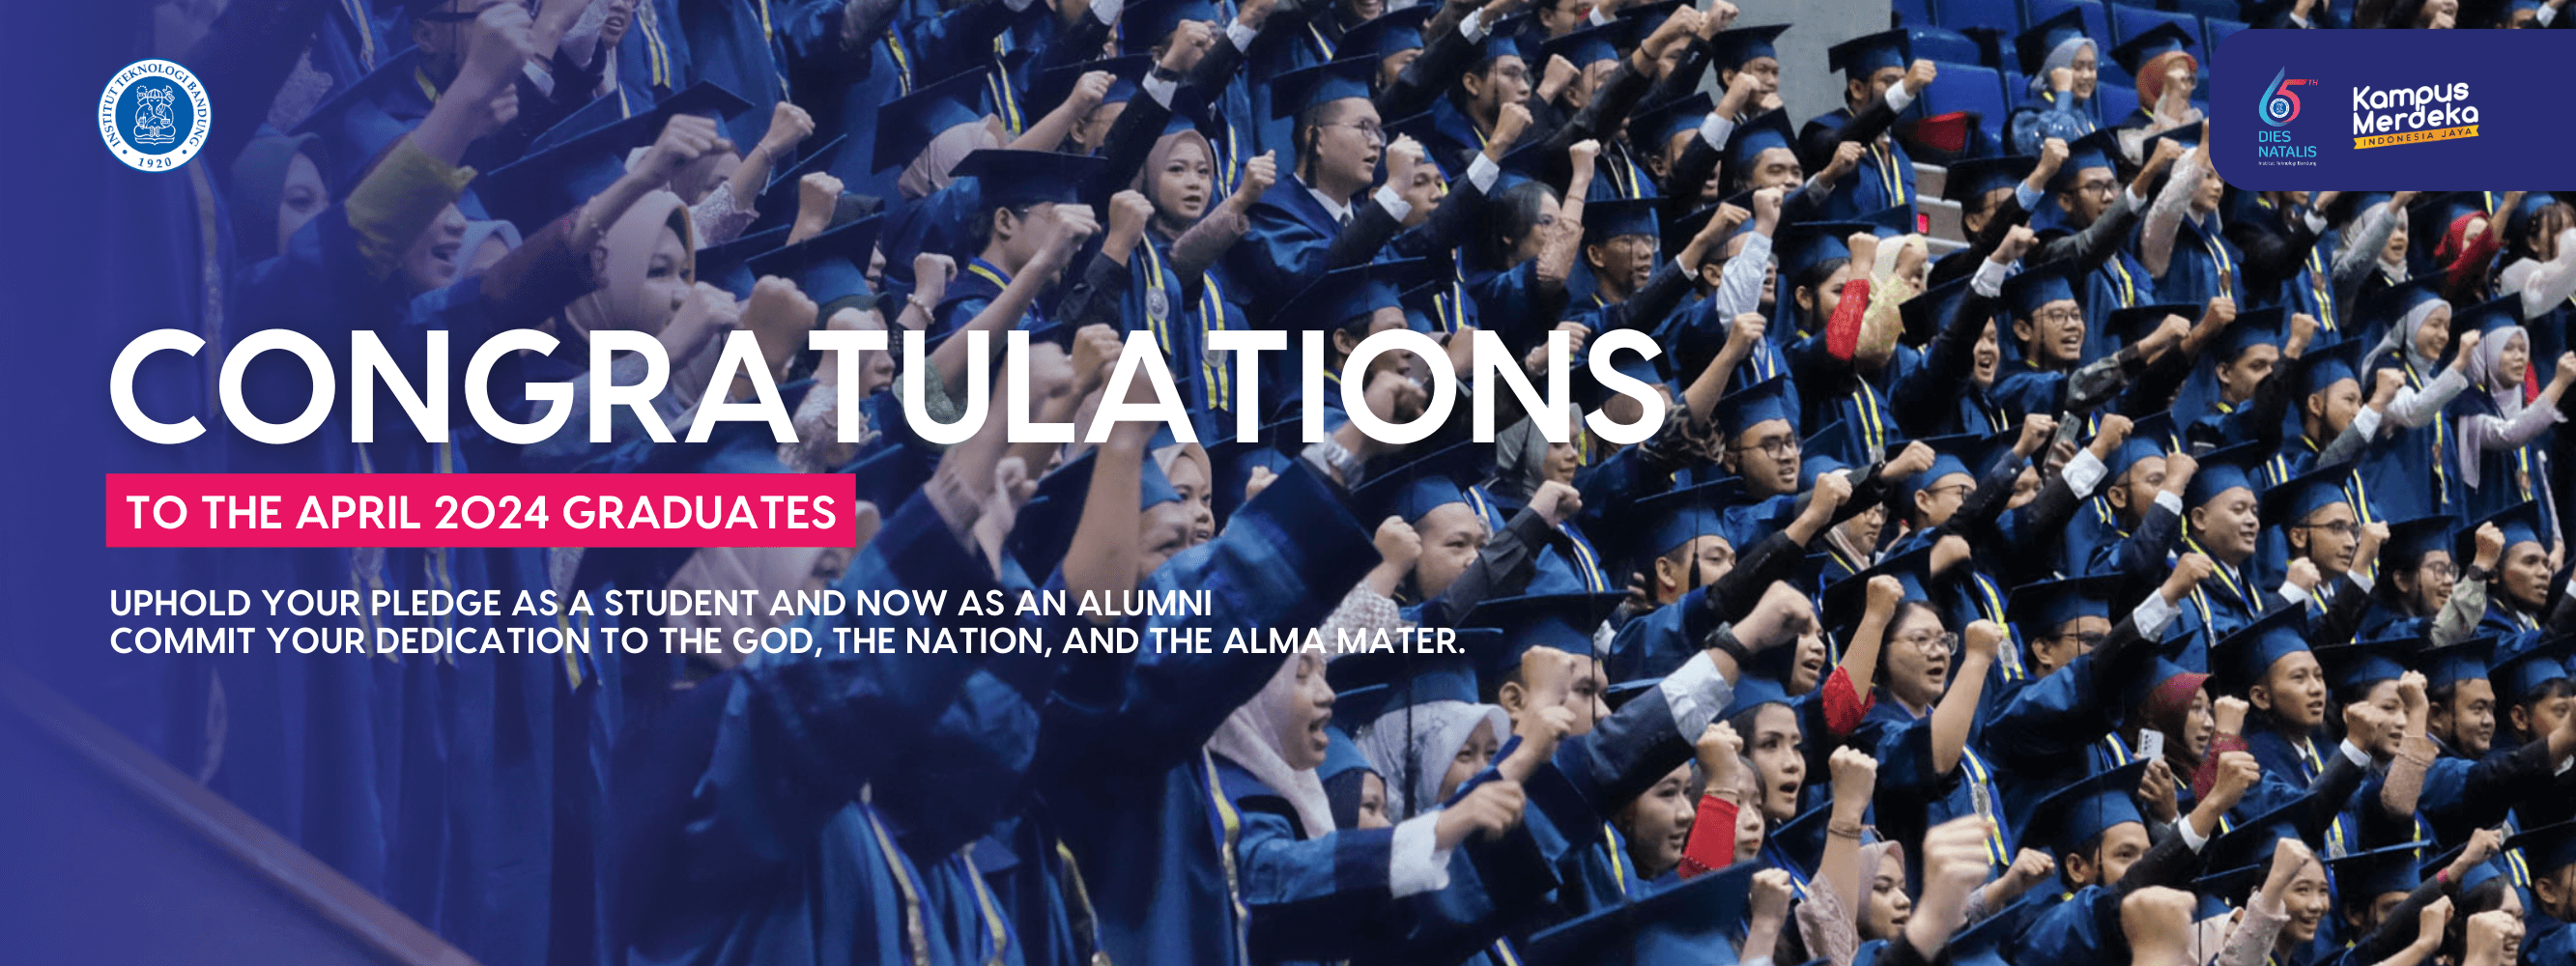 Congratulations ITB Graduates April 2024